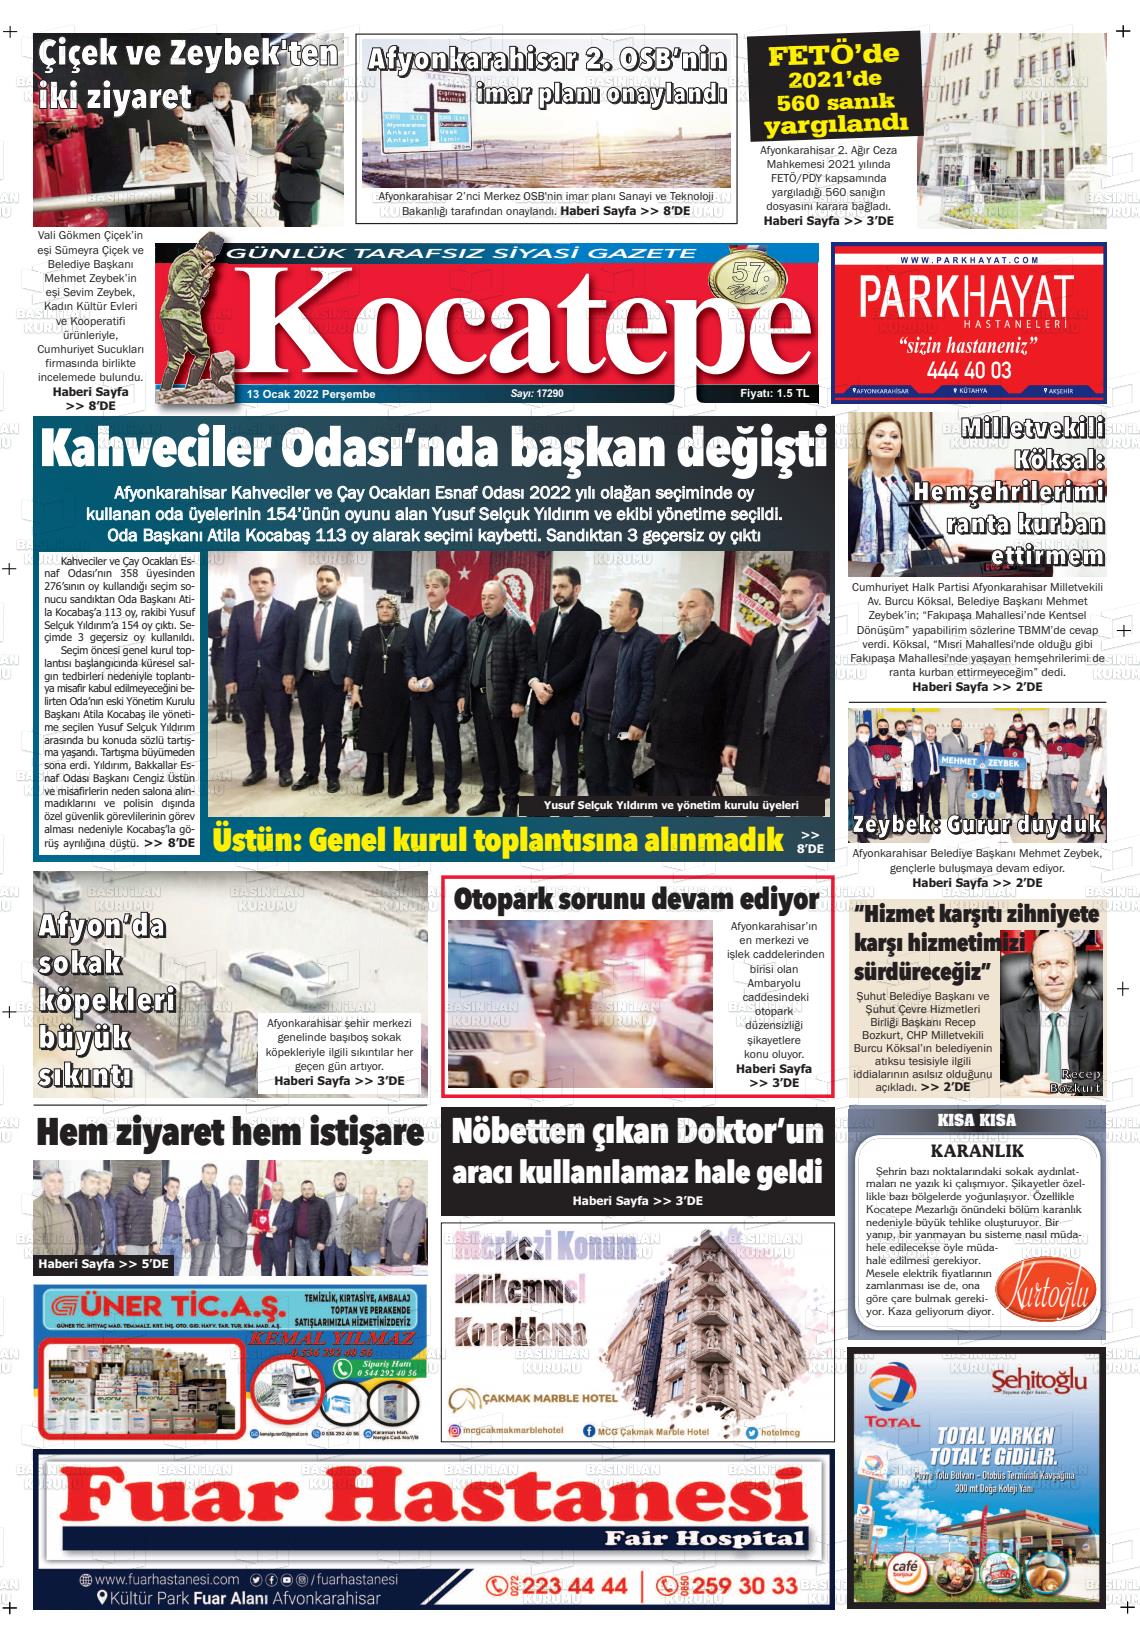 13 Ocak 2022 Kocatepe Gazete Manşeti